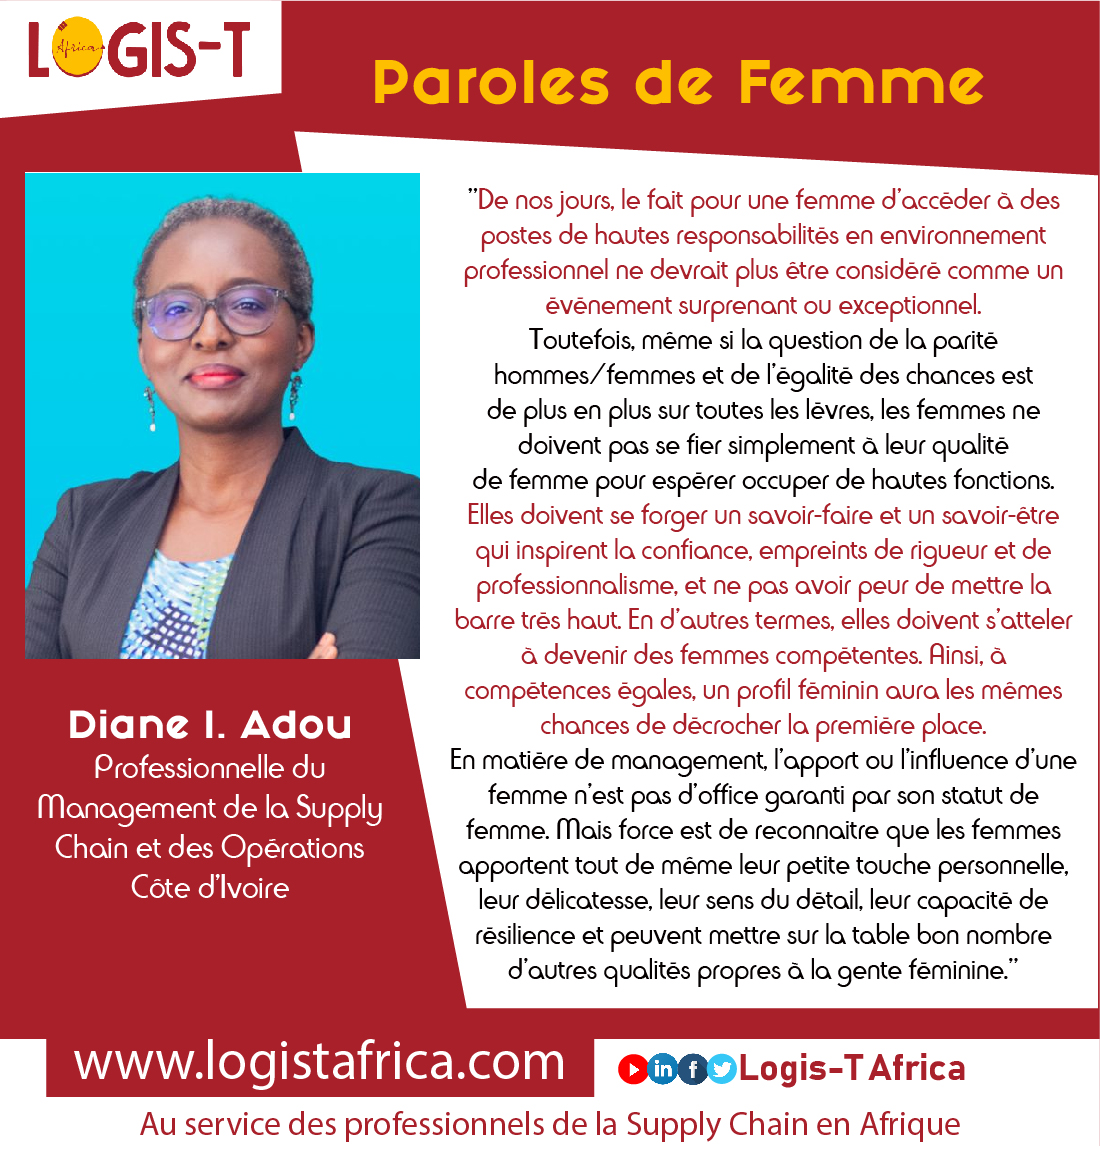 𝗣𝗮𝗿𝗼𝗹𝗲𝘀 𝗱𝗲 𝗙𝗲𝗺𝗺𝗲 Diane I. Adou - Professionnelle du #Management de la #SupplyChain et des Opérations / Côte d’Ivoire LogisT Africa - Au service des professionnels de la supply chain en Afrique #Logistique #cotedivoire #leadershipfeminine #paroledefemme #Afrique